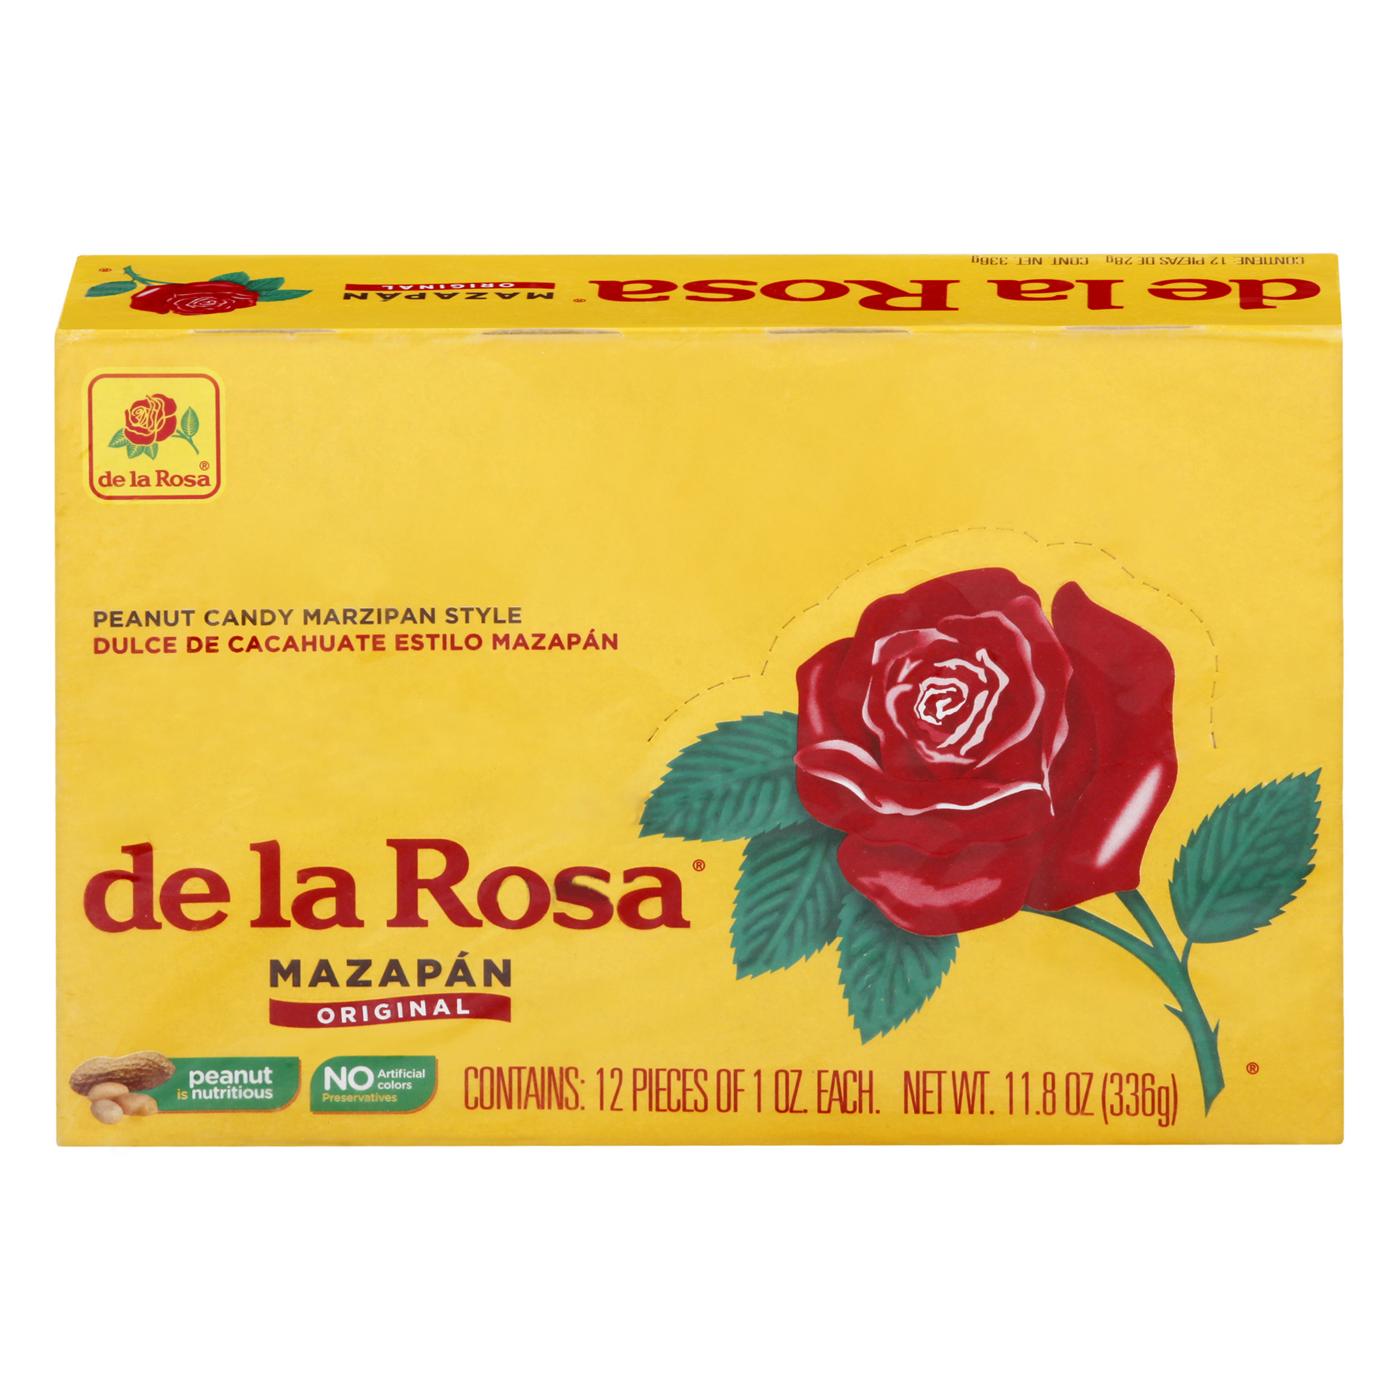 De La Rosa Mazapan Original Peanut Candy; image 1 of 2